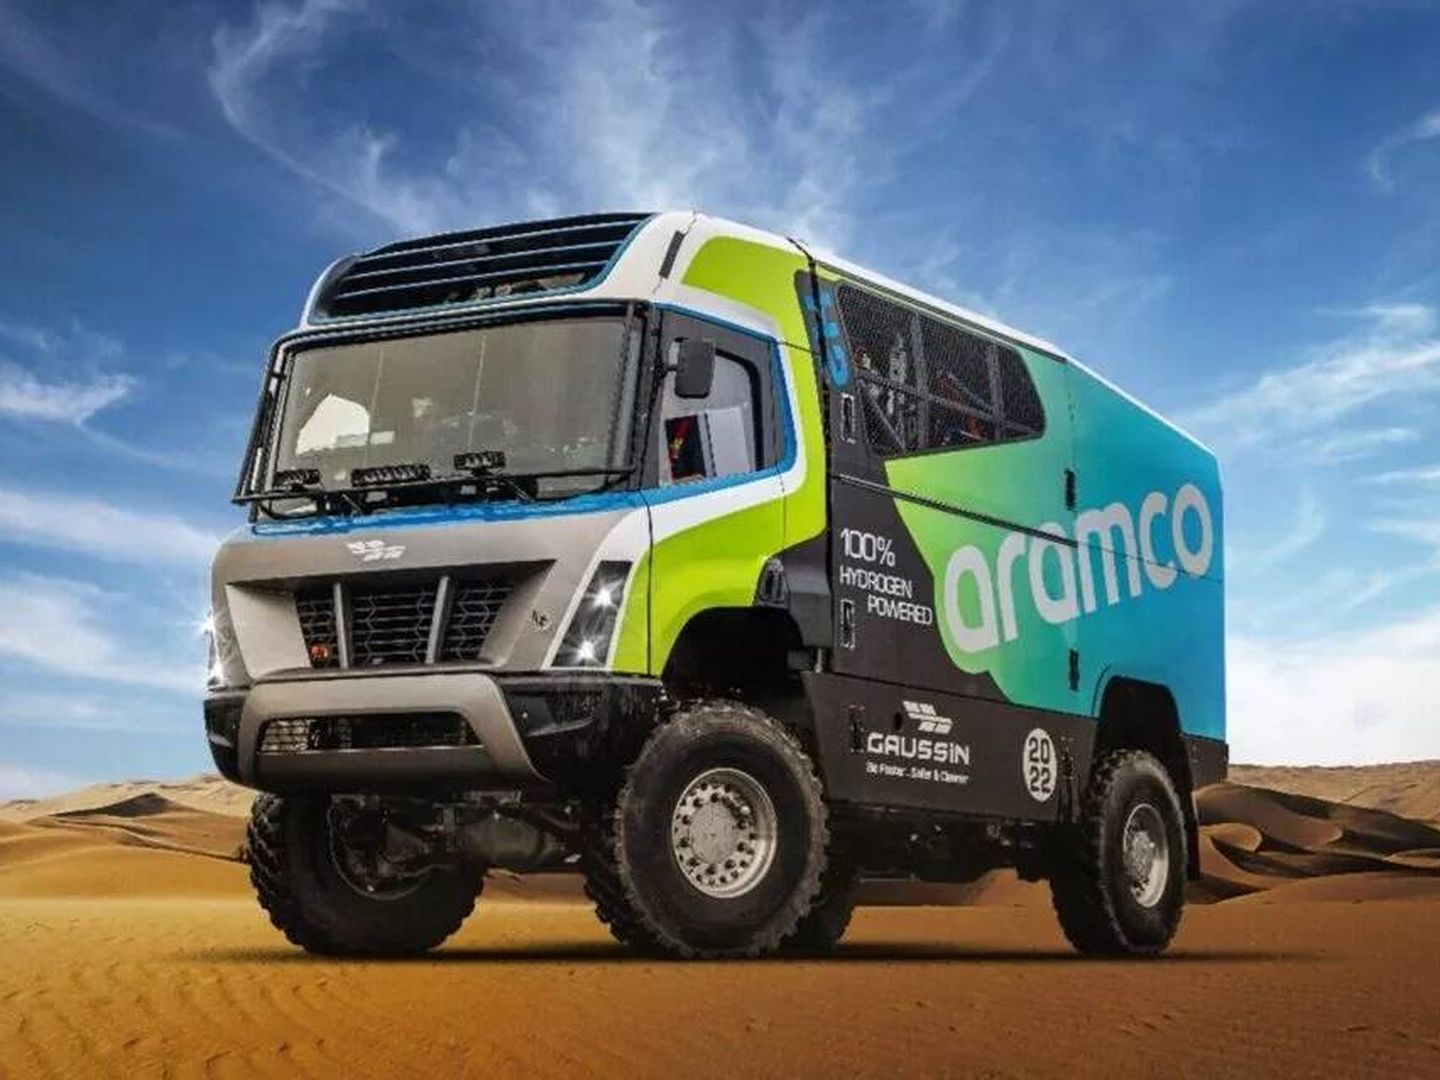 Aramco ya está desarrollando actividades en competición relacionadas con el hidrógeno en el Rallye Dakar. (Aramco)